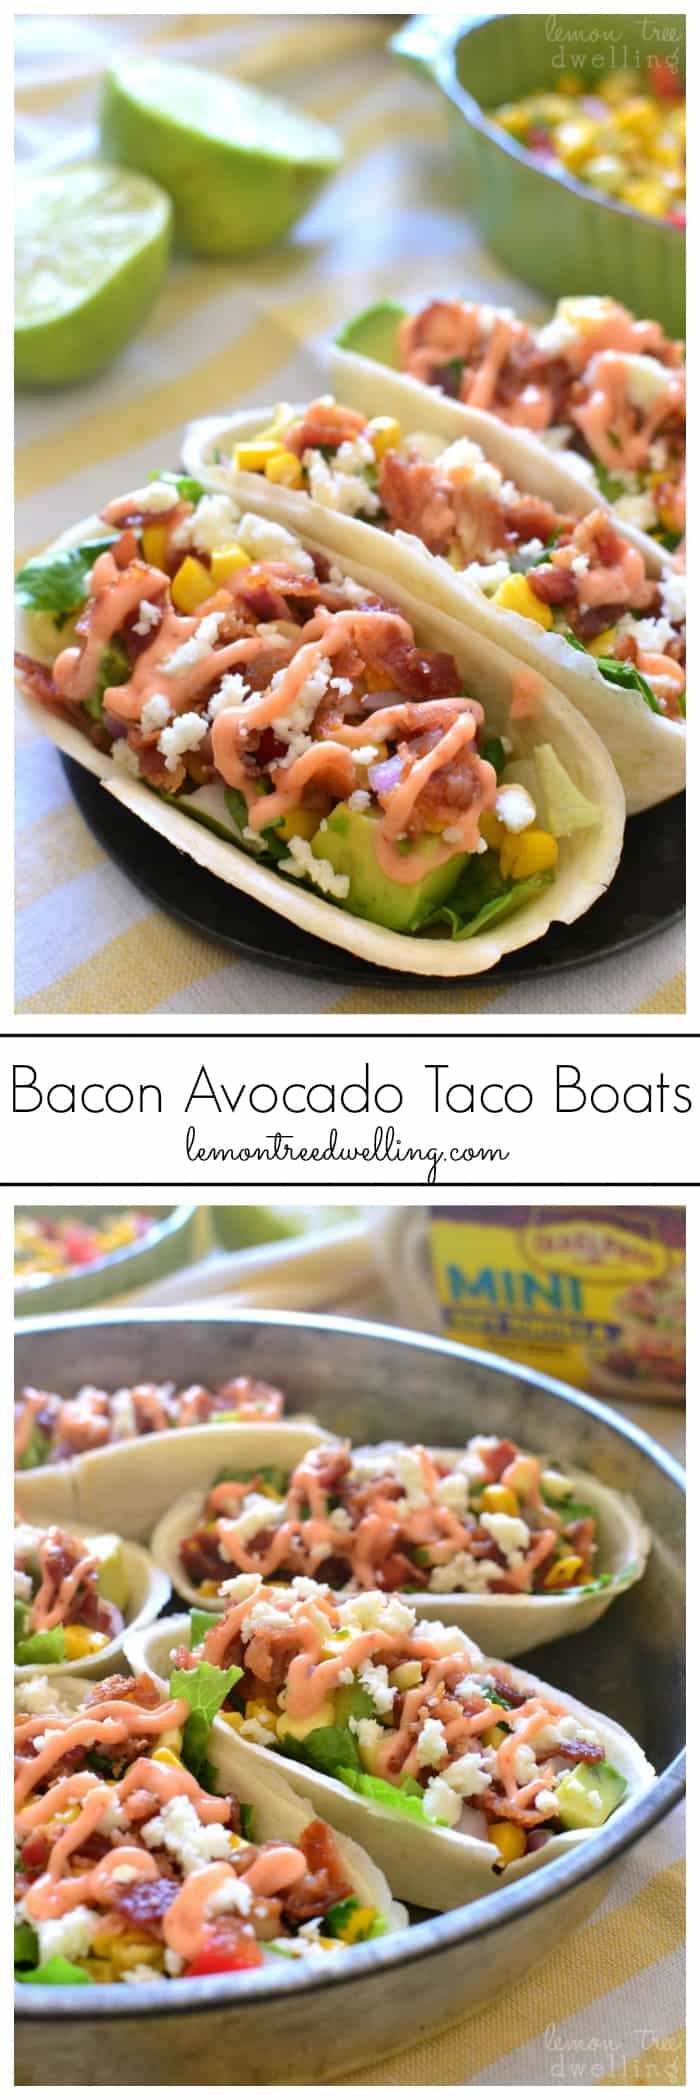 Bacon Avocado Taco Boats - loaded with lettuce, bacon, avocado, cheese, fresh corn salsa, and spicy sriracha mayo. My family LOVED these!